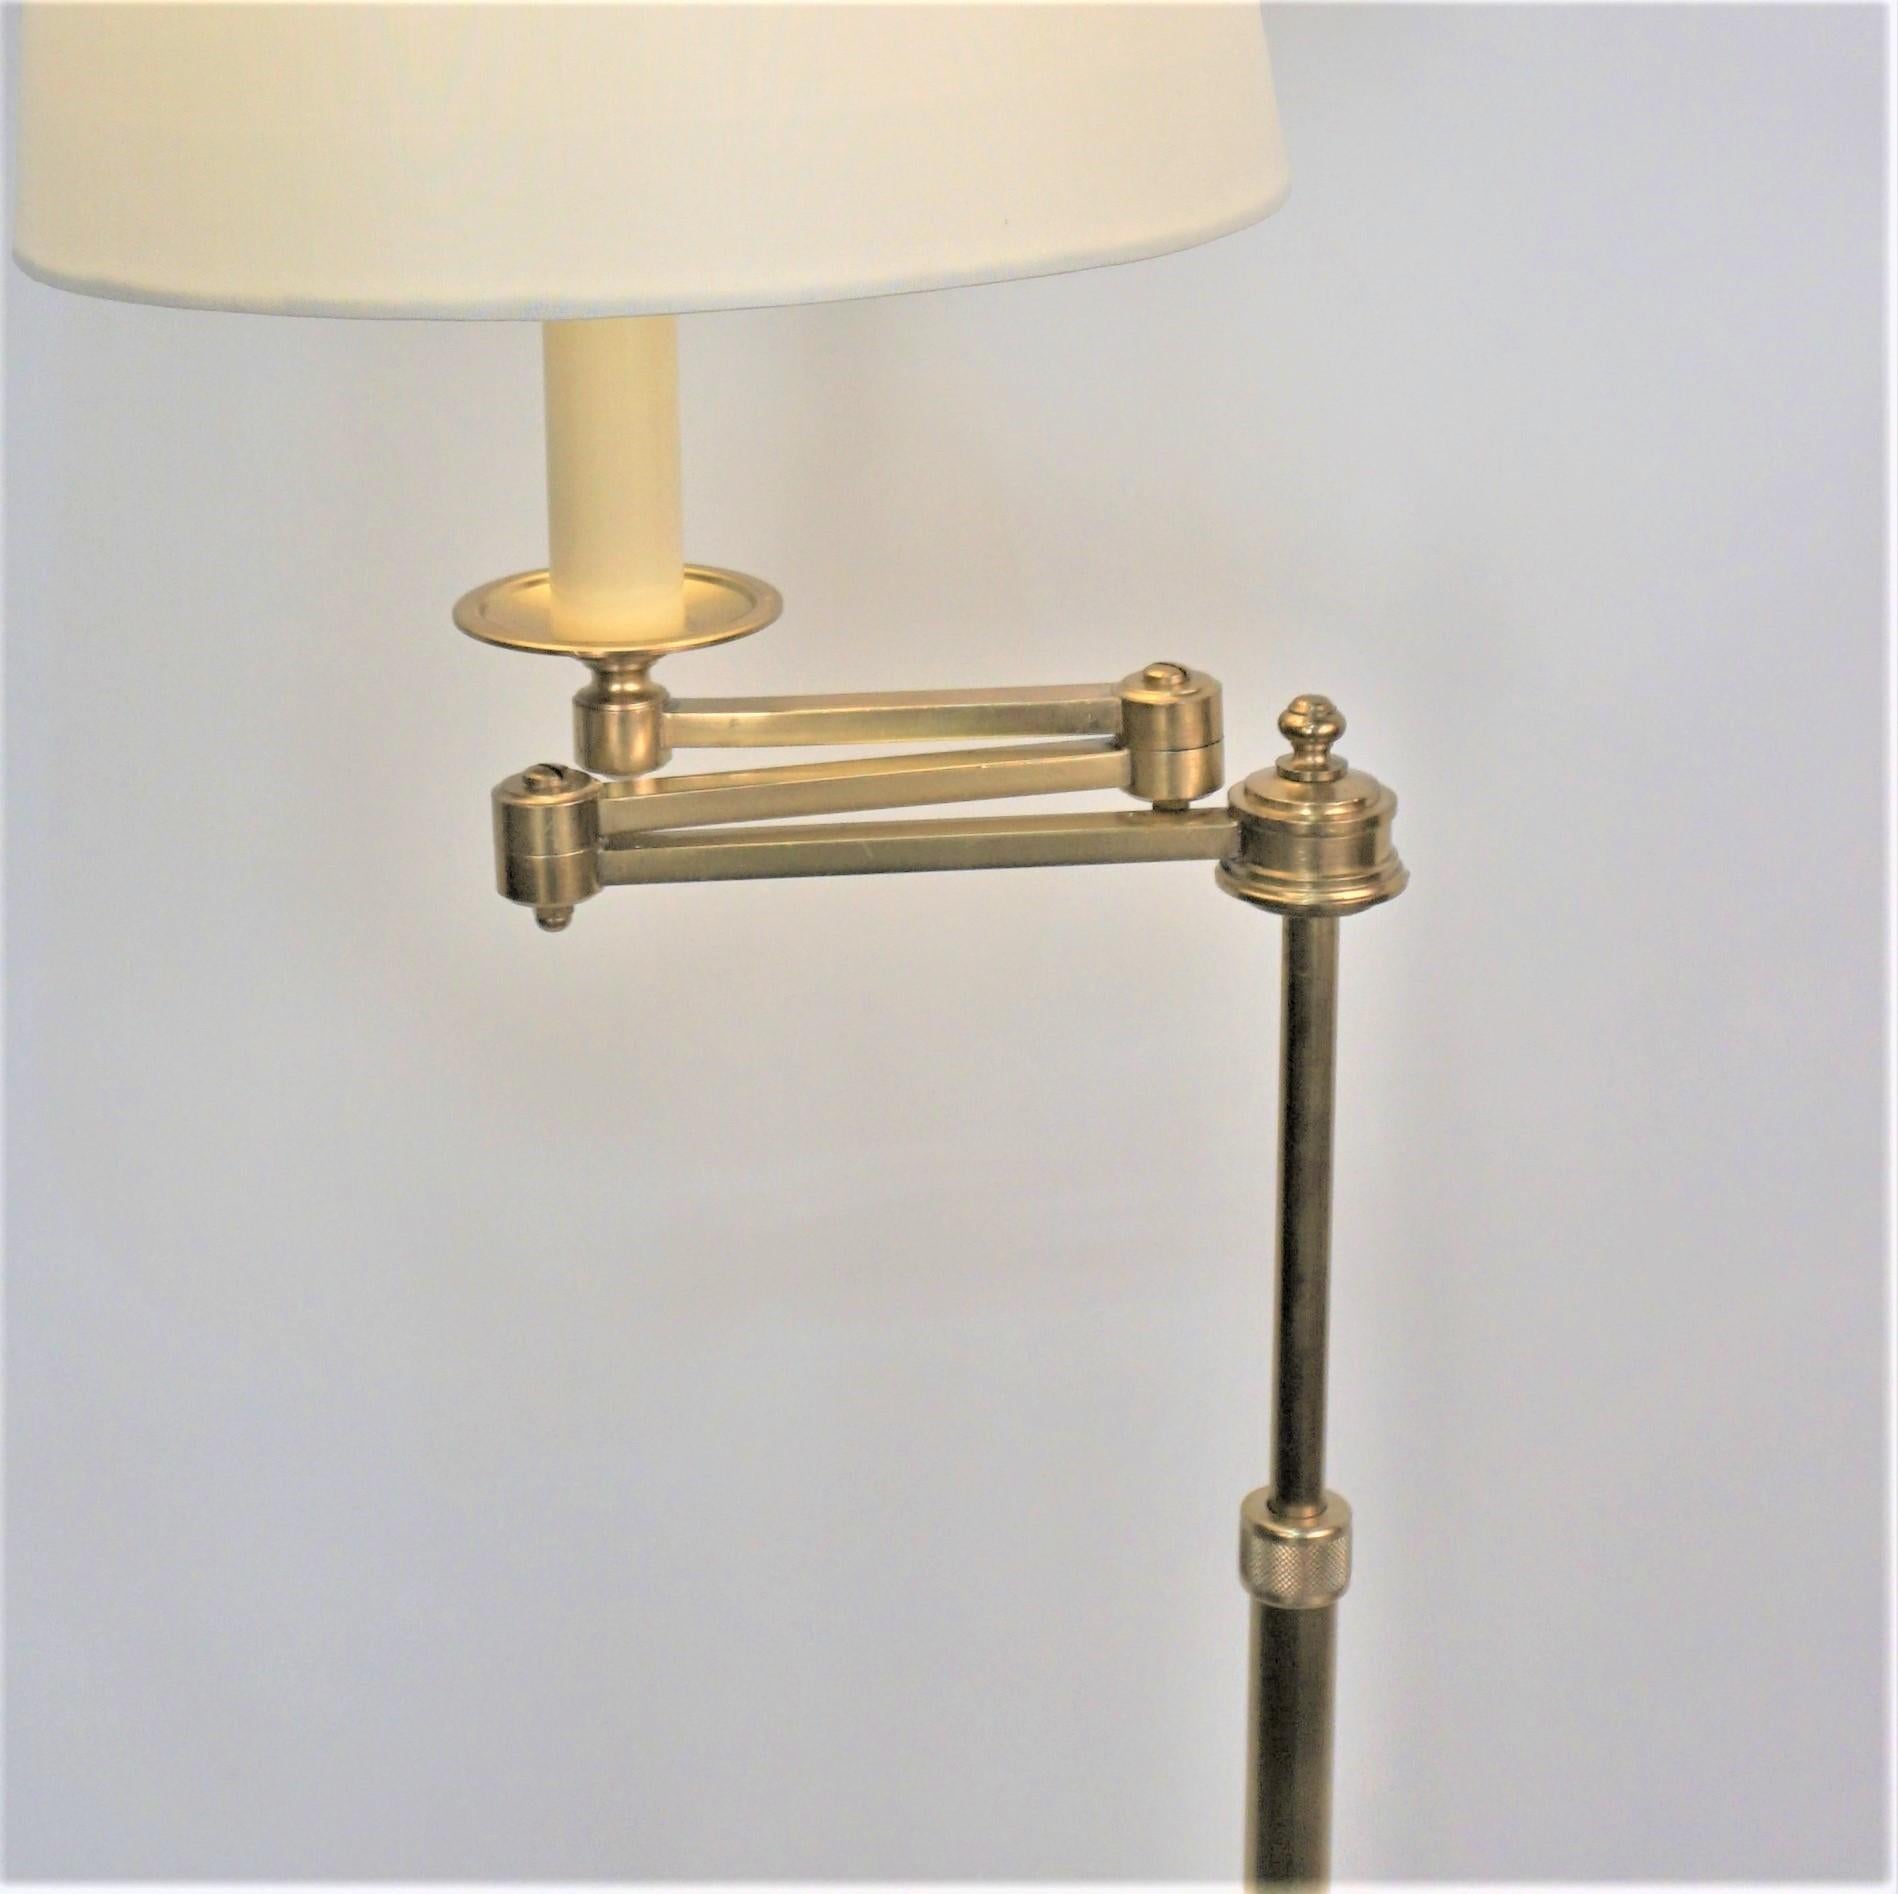 1950's Bronze Swing Arm Adjustable Height Floor Lamp by Bagues 1